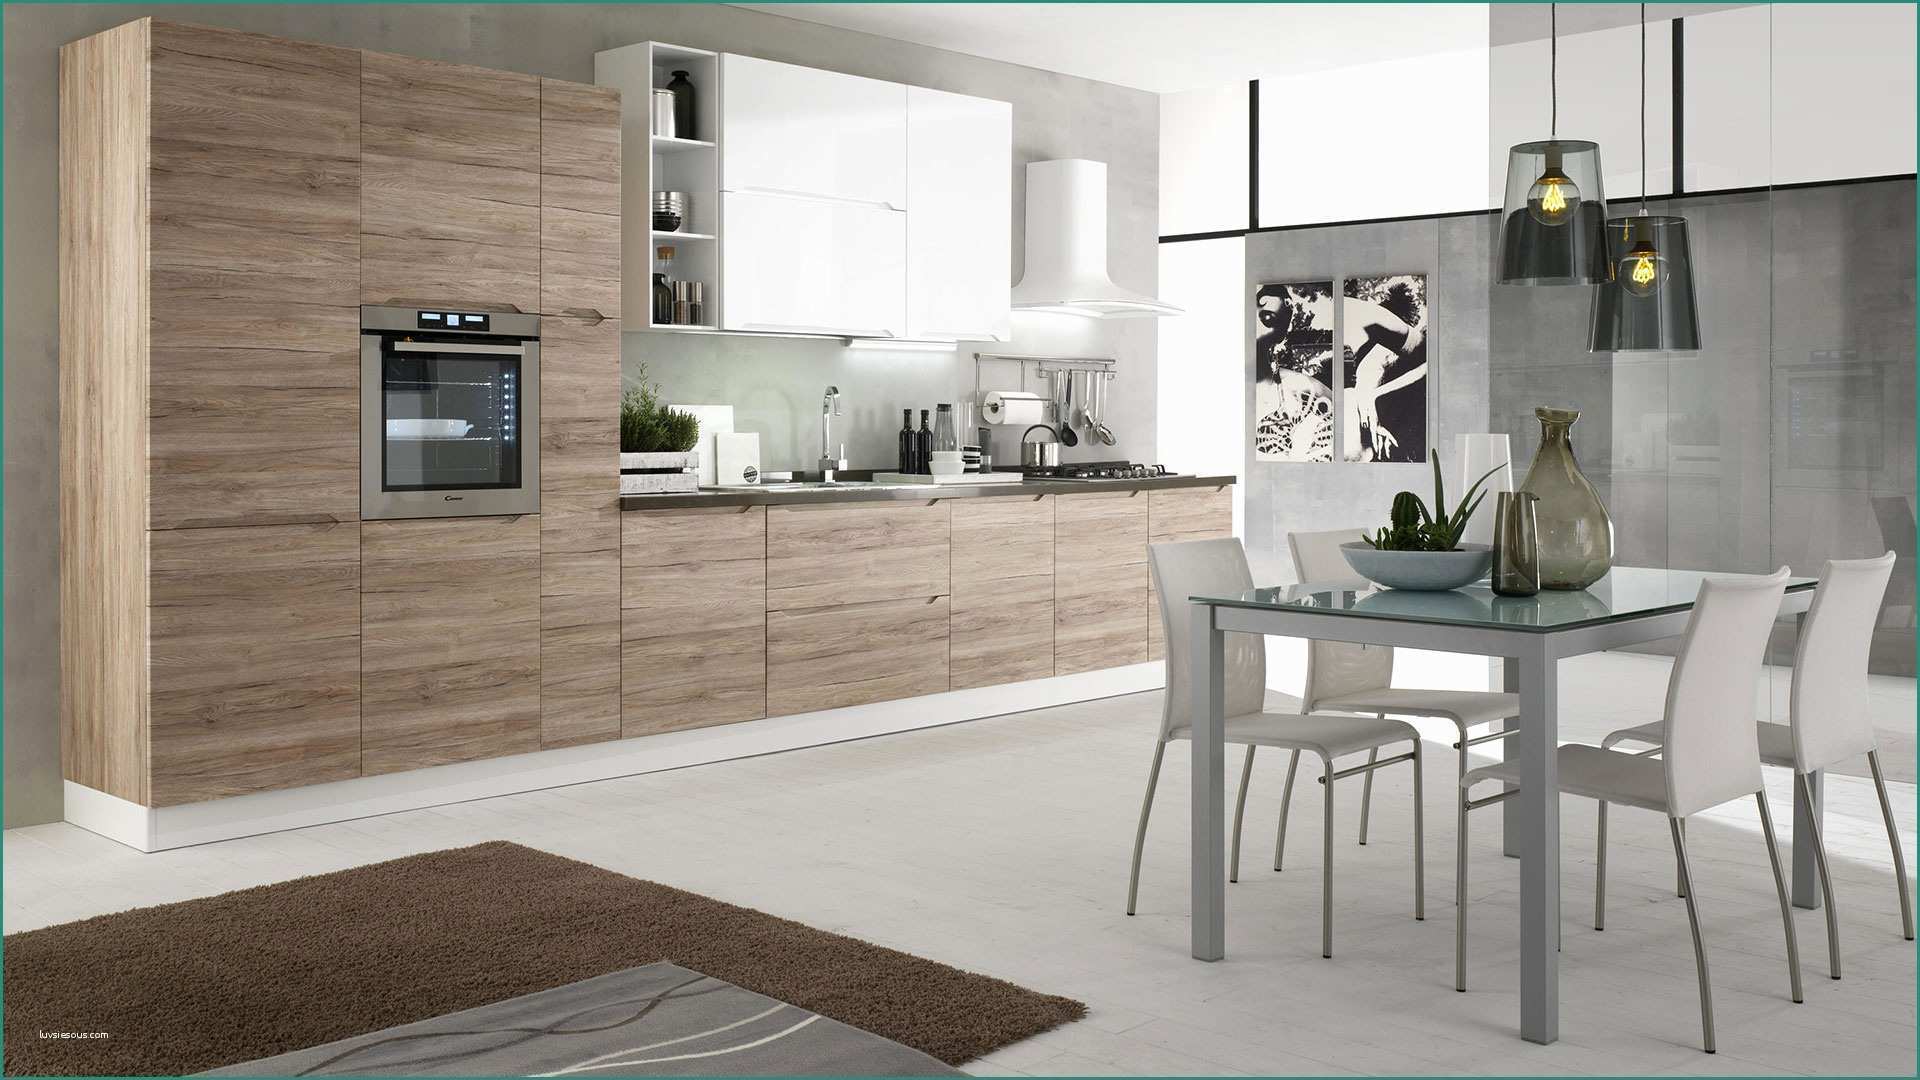 Cucine Moderne Berloni E Immagini Di Cucine Moderne Excellent soggiorno Open Space soggiorno